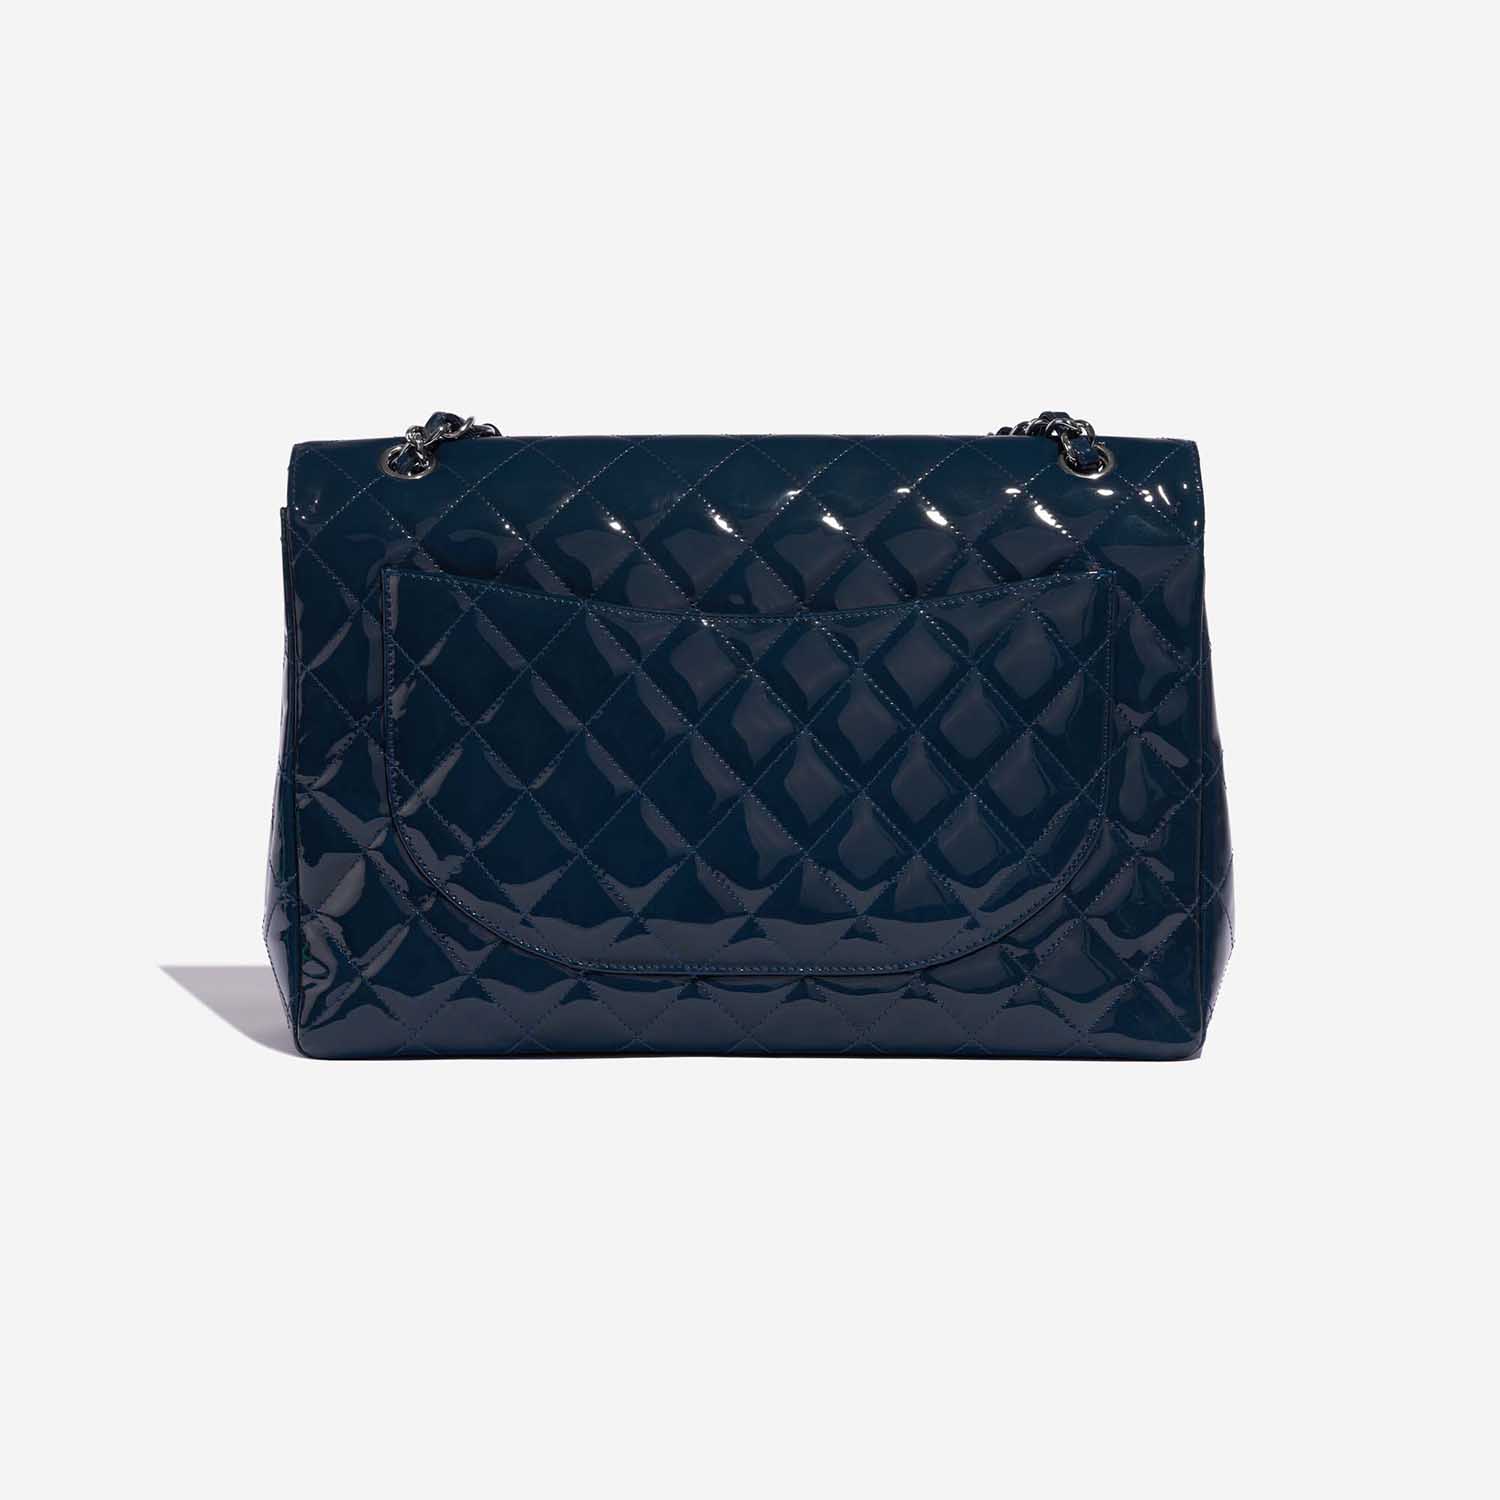 Sac Chanel d'occasion Classique Maxi Patent Leather Marine Blue Back | Vendez votre sac de créateur sur Saclab.com